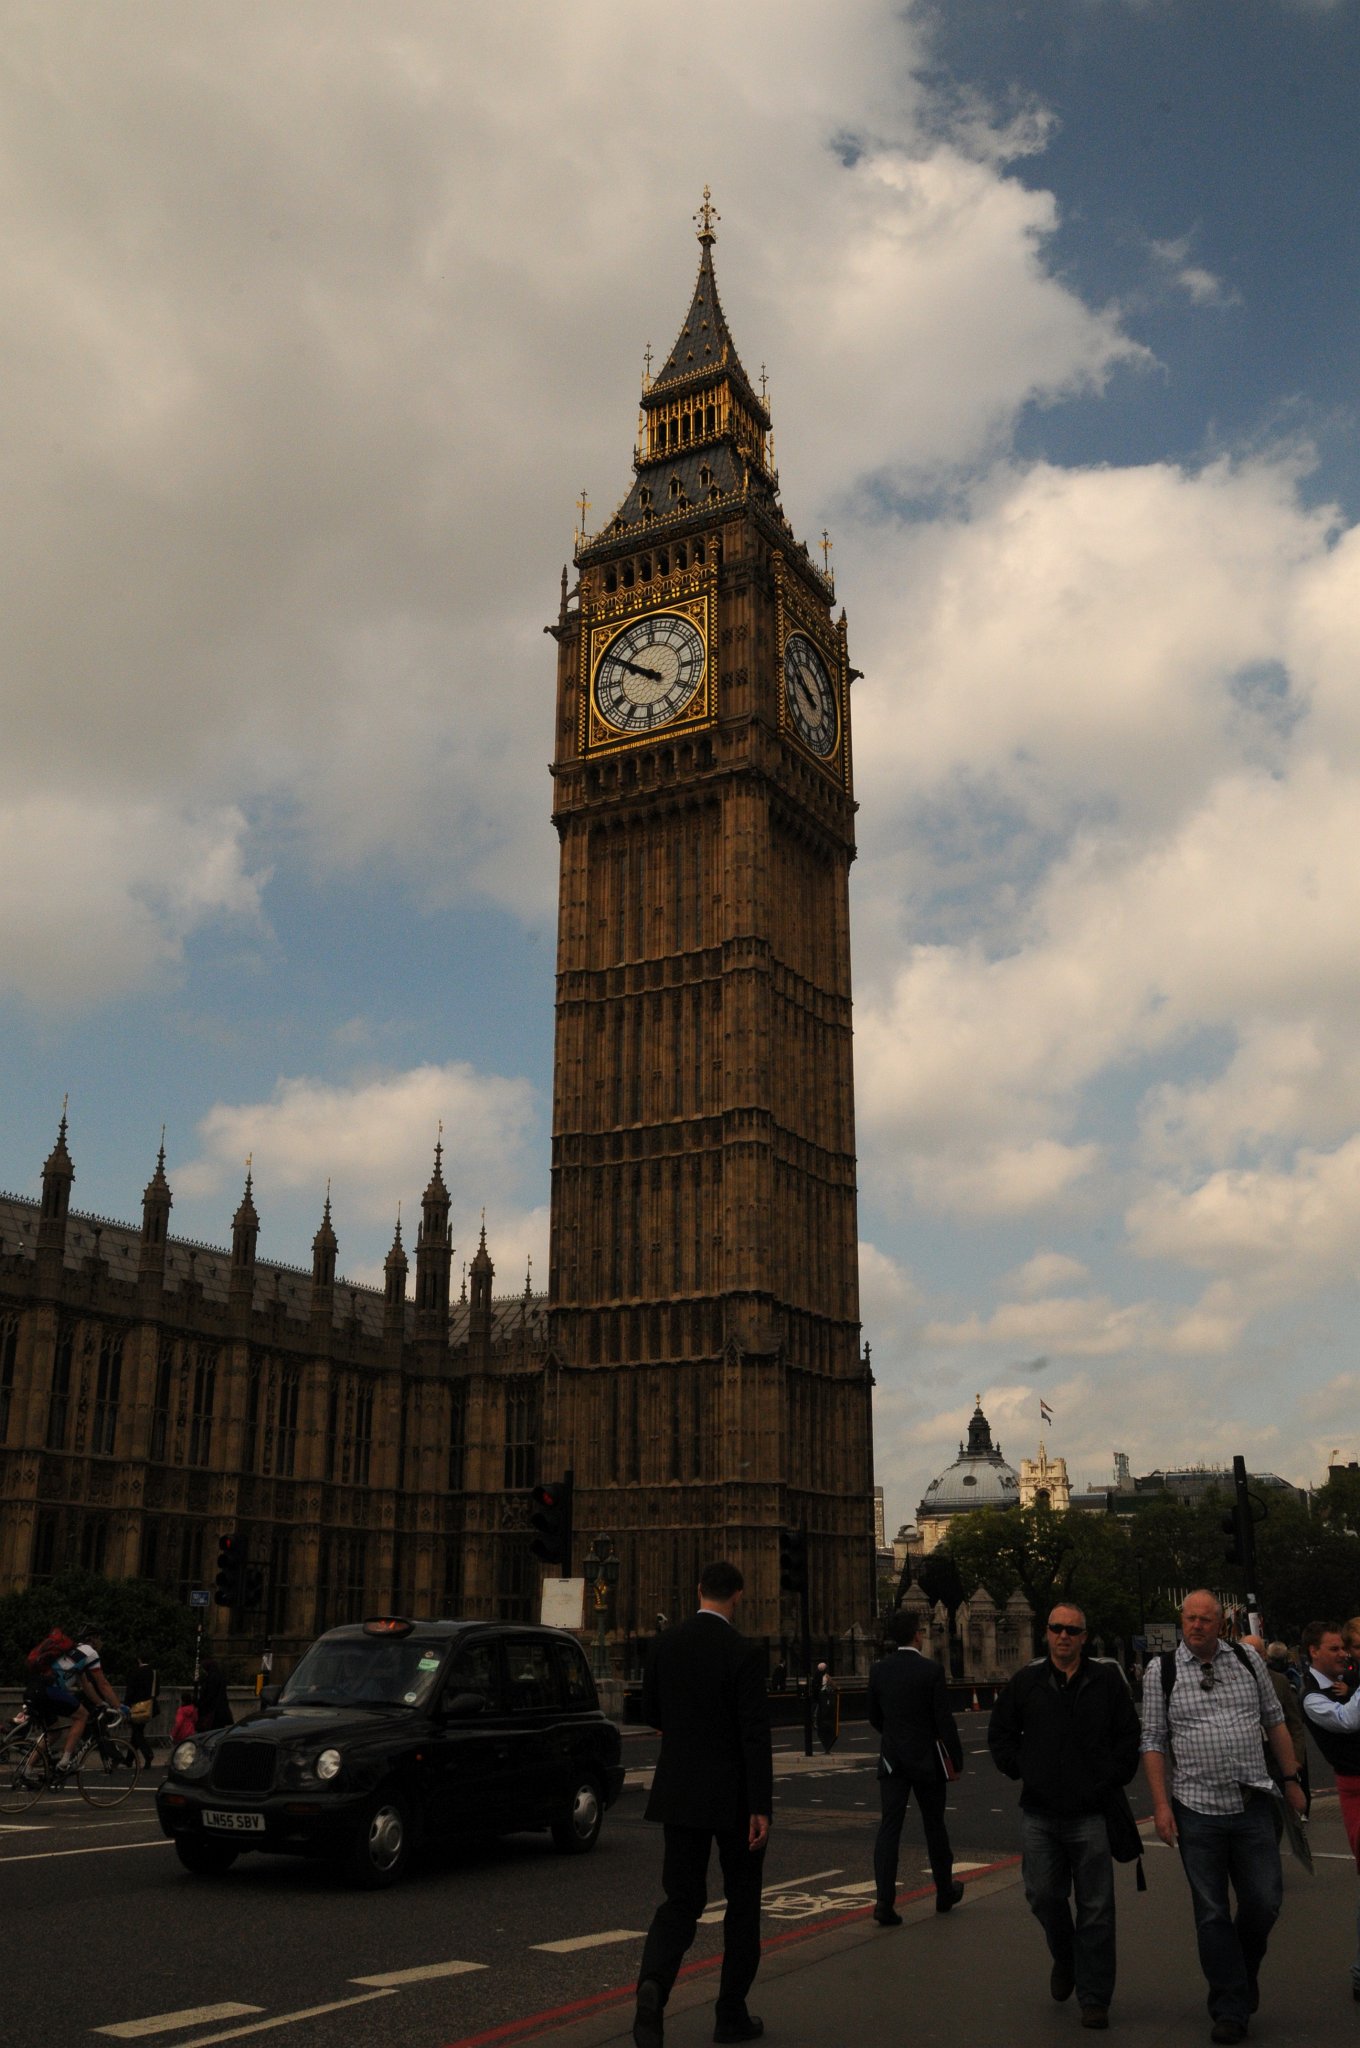 DSC_3711_2.jpg - Zvon, uložená ve věži Big Benu má hmotnost 13,762 tun, původně byl naladěn na tón E a srdce zvonu má hmotnost 203 kg. Doba mezi jednotlivými údery zvonu je 5 sekund. Je běžným omylem, že je považován za nejtěžší zvon Velké Británie ale ve skutečnosti je třetí nejtěžší po Great Paul v katedrále svatého Pavla v Londýně s hmotností 17,002 t a Great George v Liverpoolské katedrále s hmotností 15,013 tun.